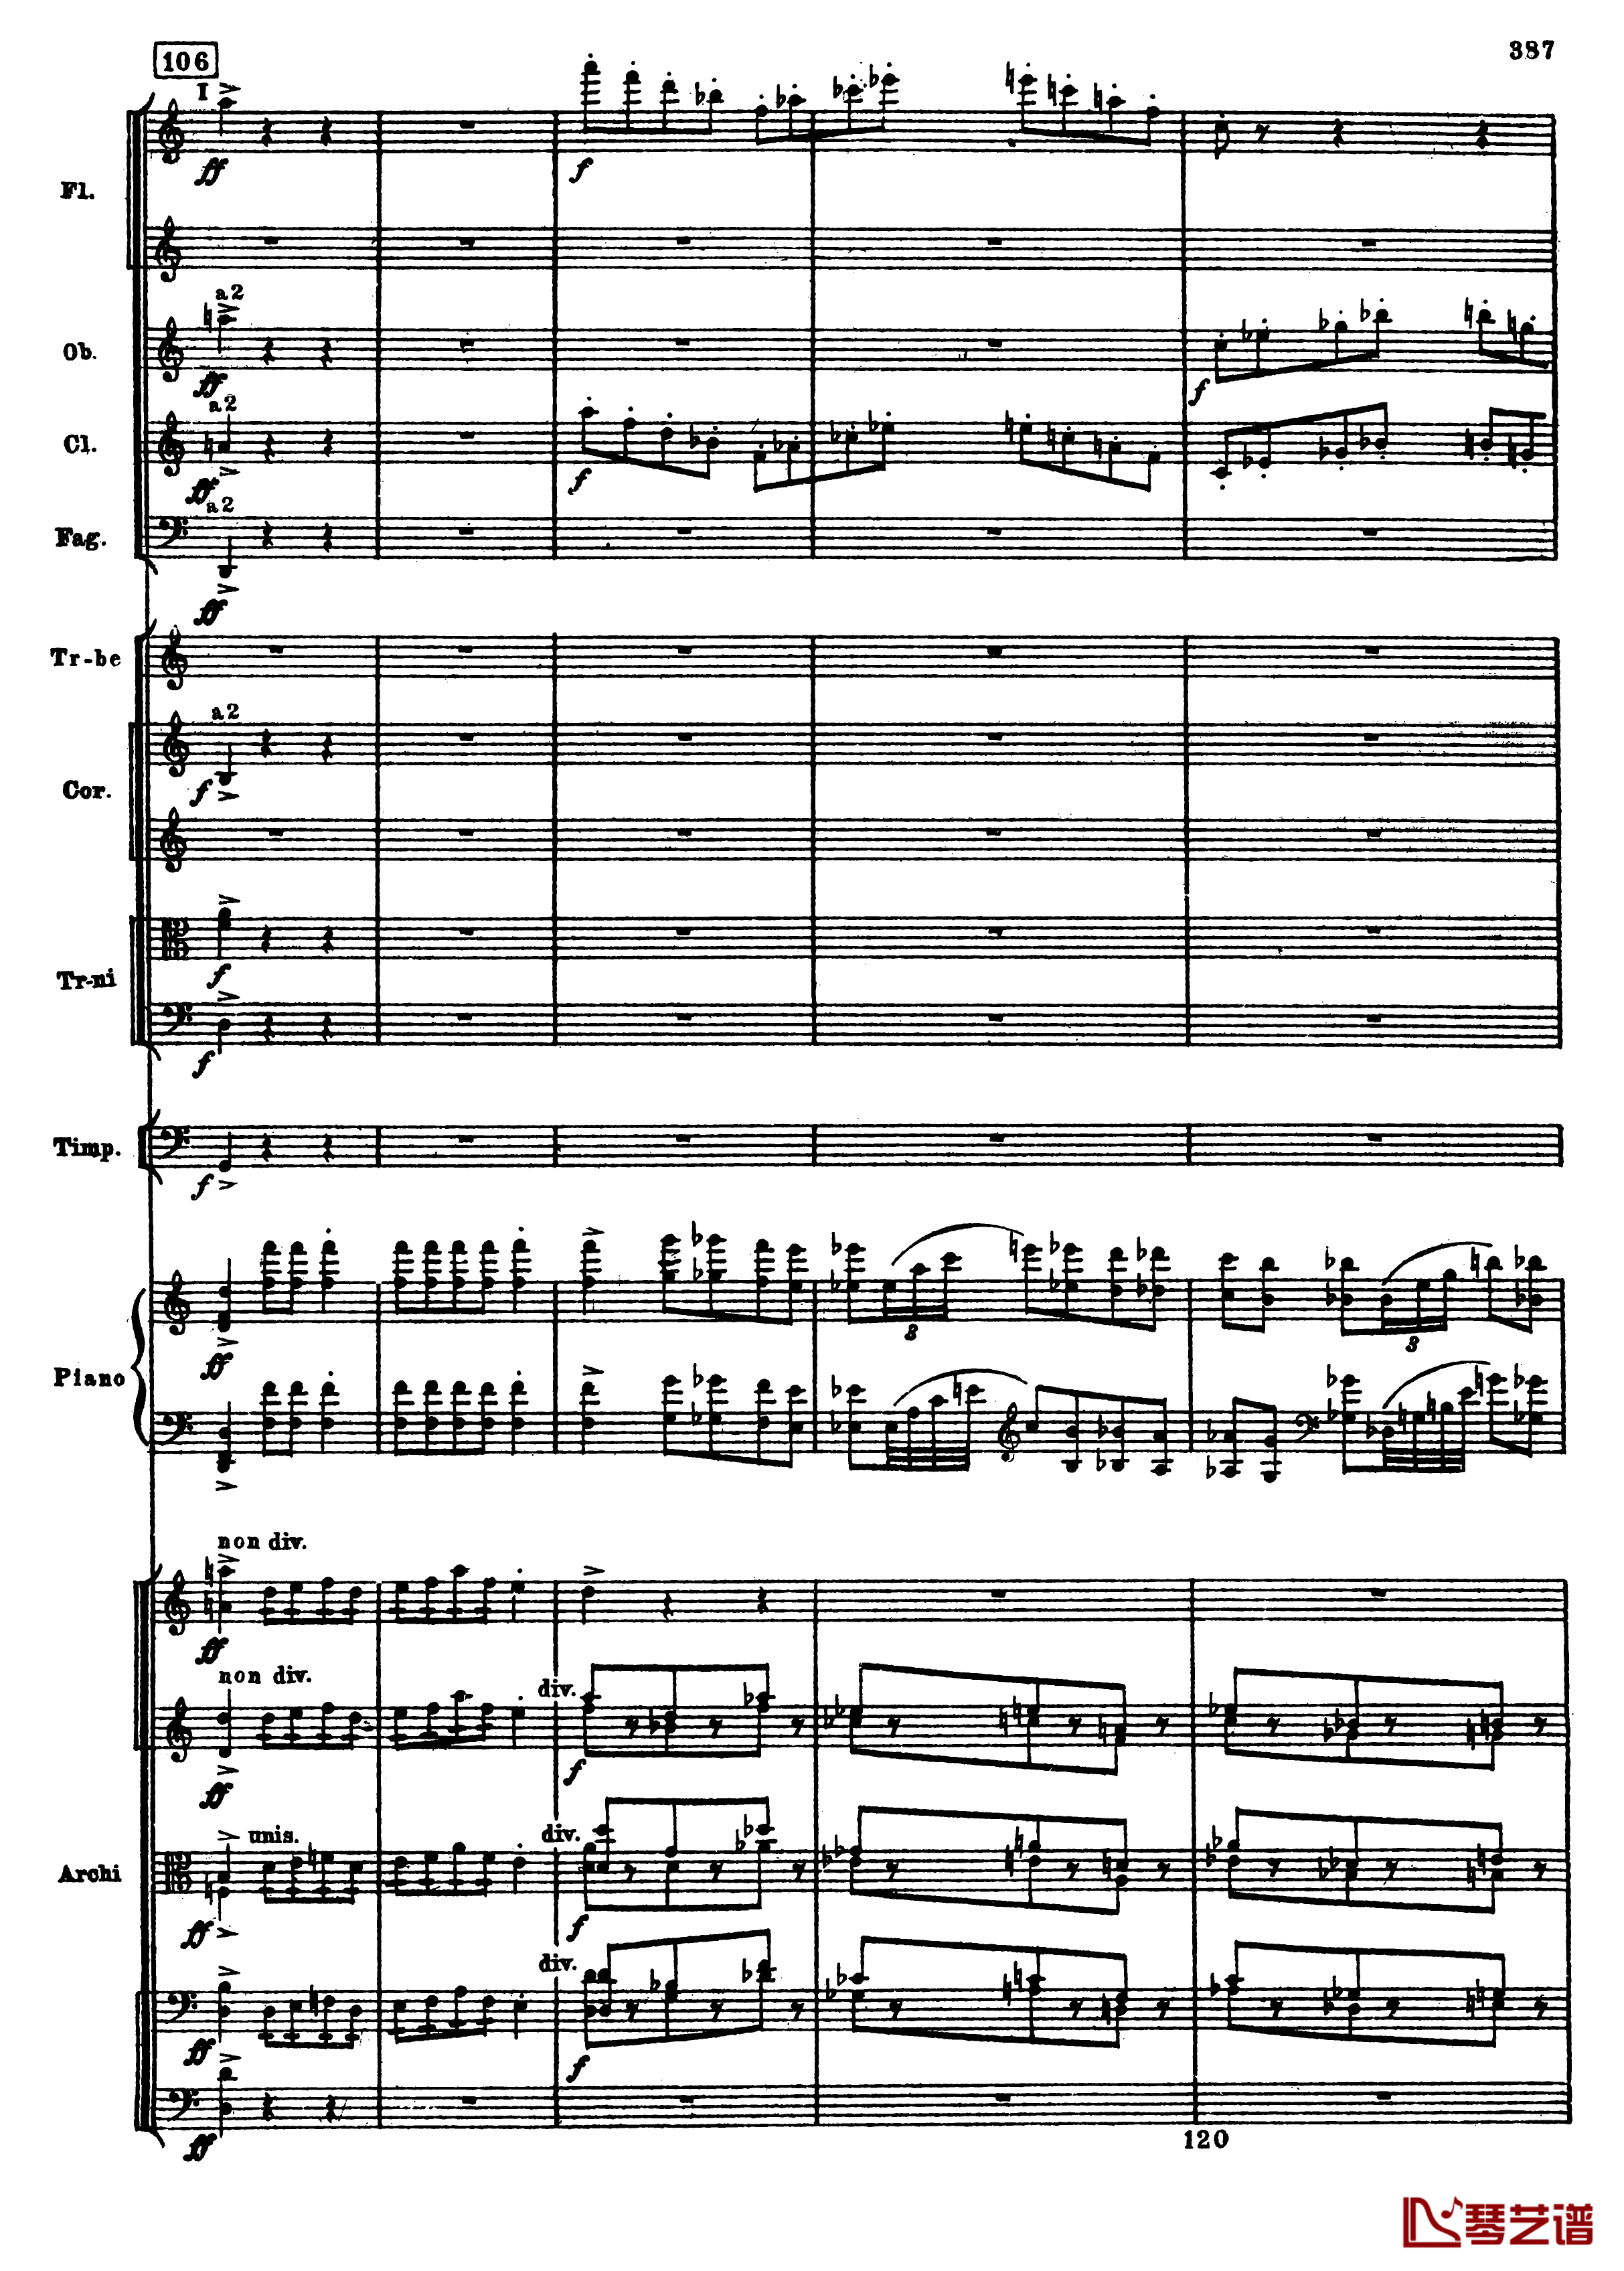 普罗科菲耶夫第三钢琴协奏曲钢琴谱-总谱-普罗科非耶夫119